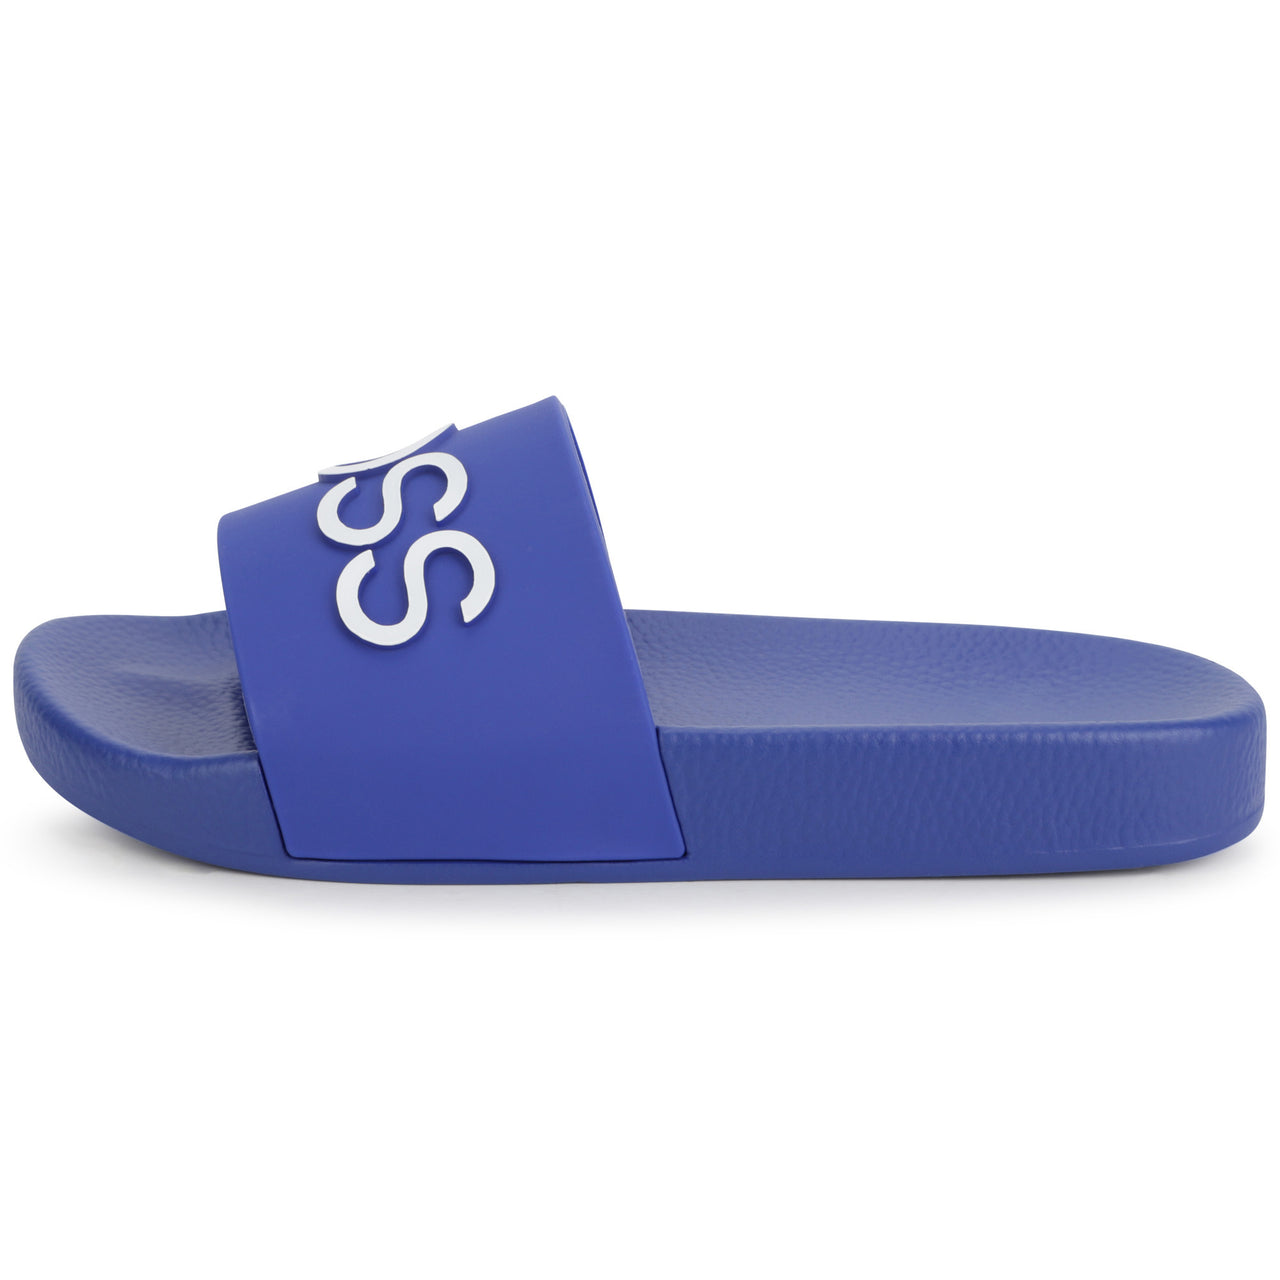 Chanclas O sandalias BOSS azul para niños y adolescentes